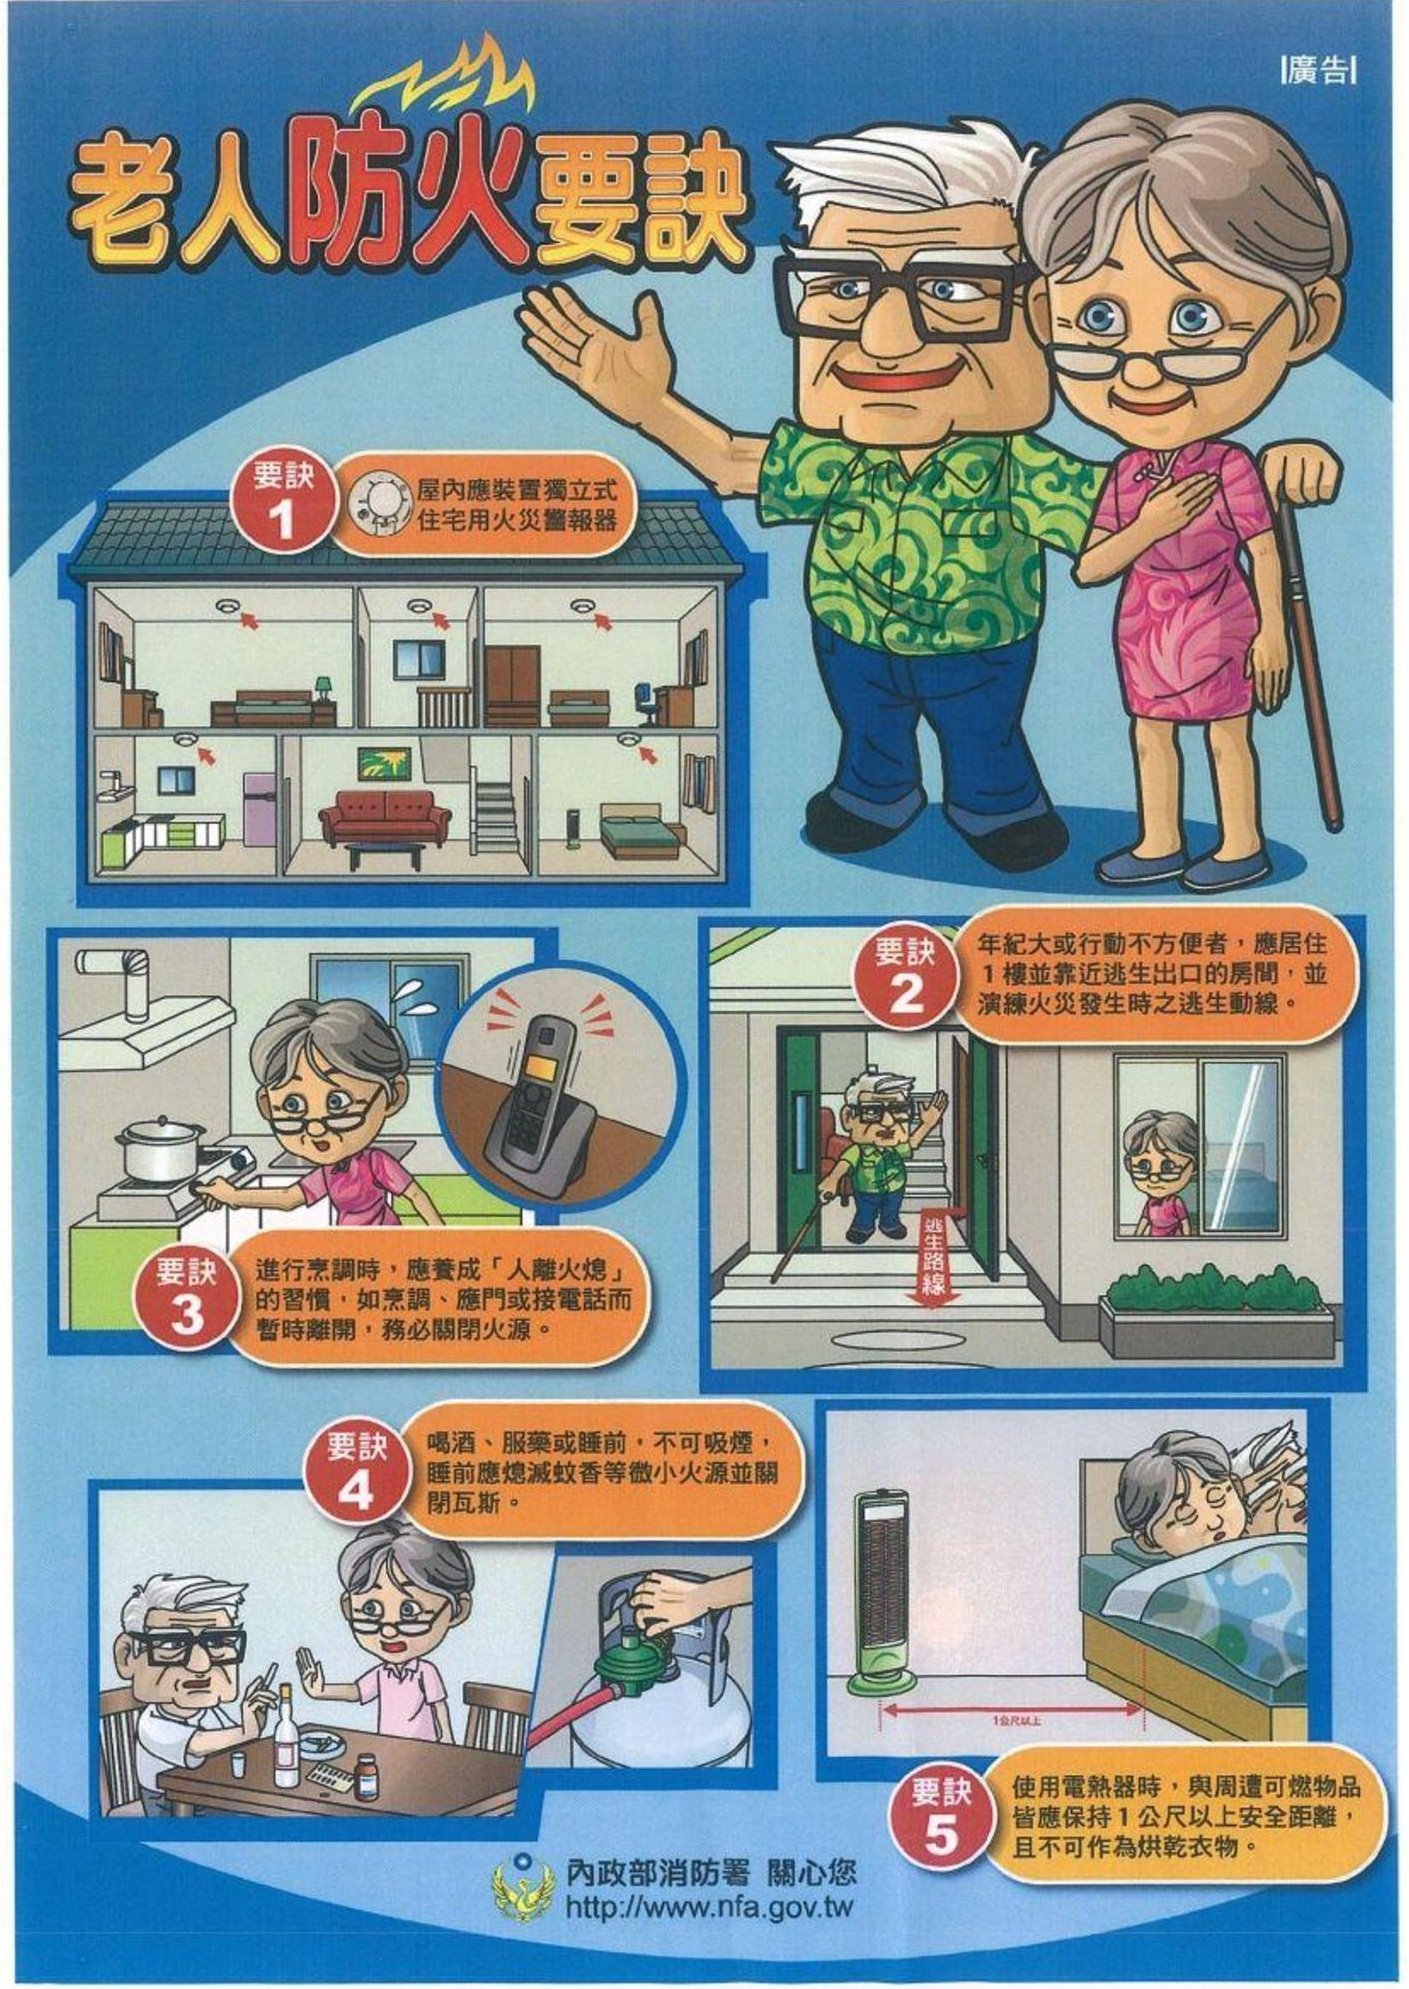 许多国家消防局非常注重小孩和老人的防火意识的宣导。（照片取自：台湾内政部消防署官网）